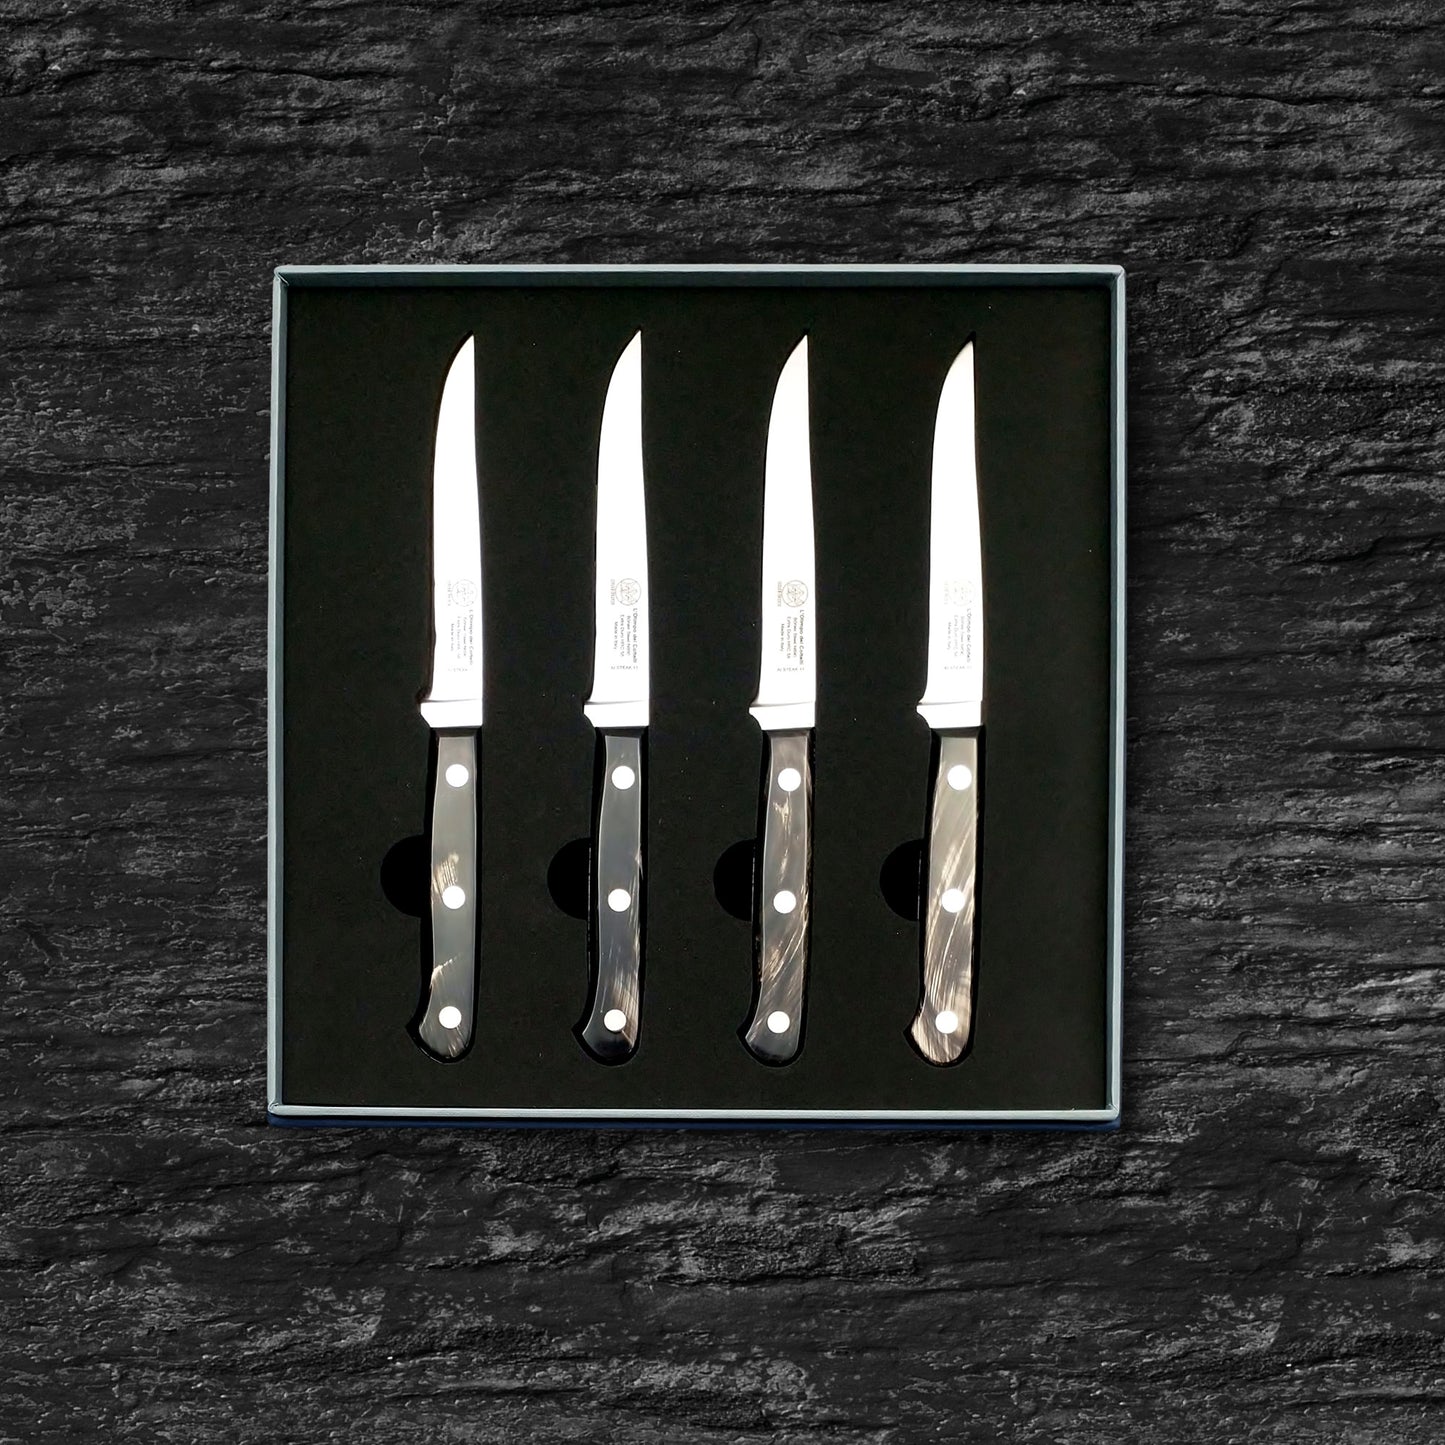 
                  
                    Set of Four Steak Knives - Plain Edge Blade 4.33” - Böhler n690 Stainless Steel - Hrc 58 - Streaked Buffalo Handle
                  
                